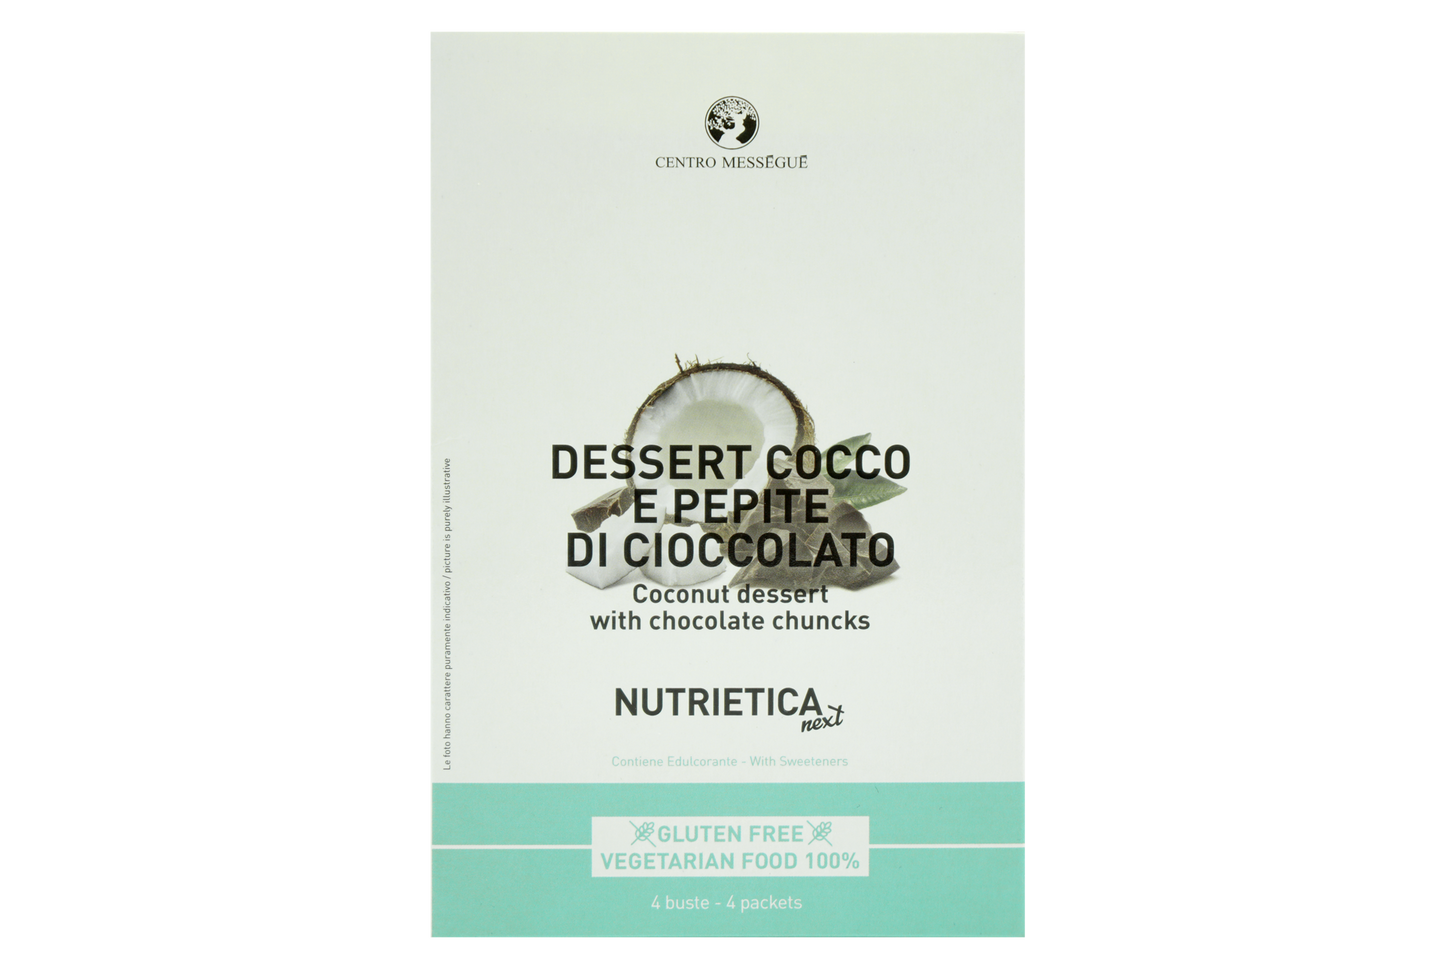 Dessert cocco e pepite di cioccolato (conf. 4 buste) GLUTEN FREE 100% VEGE- TARIAN FOOD